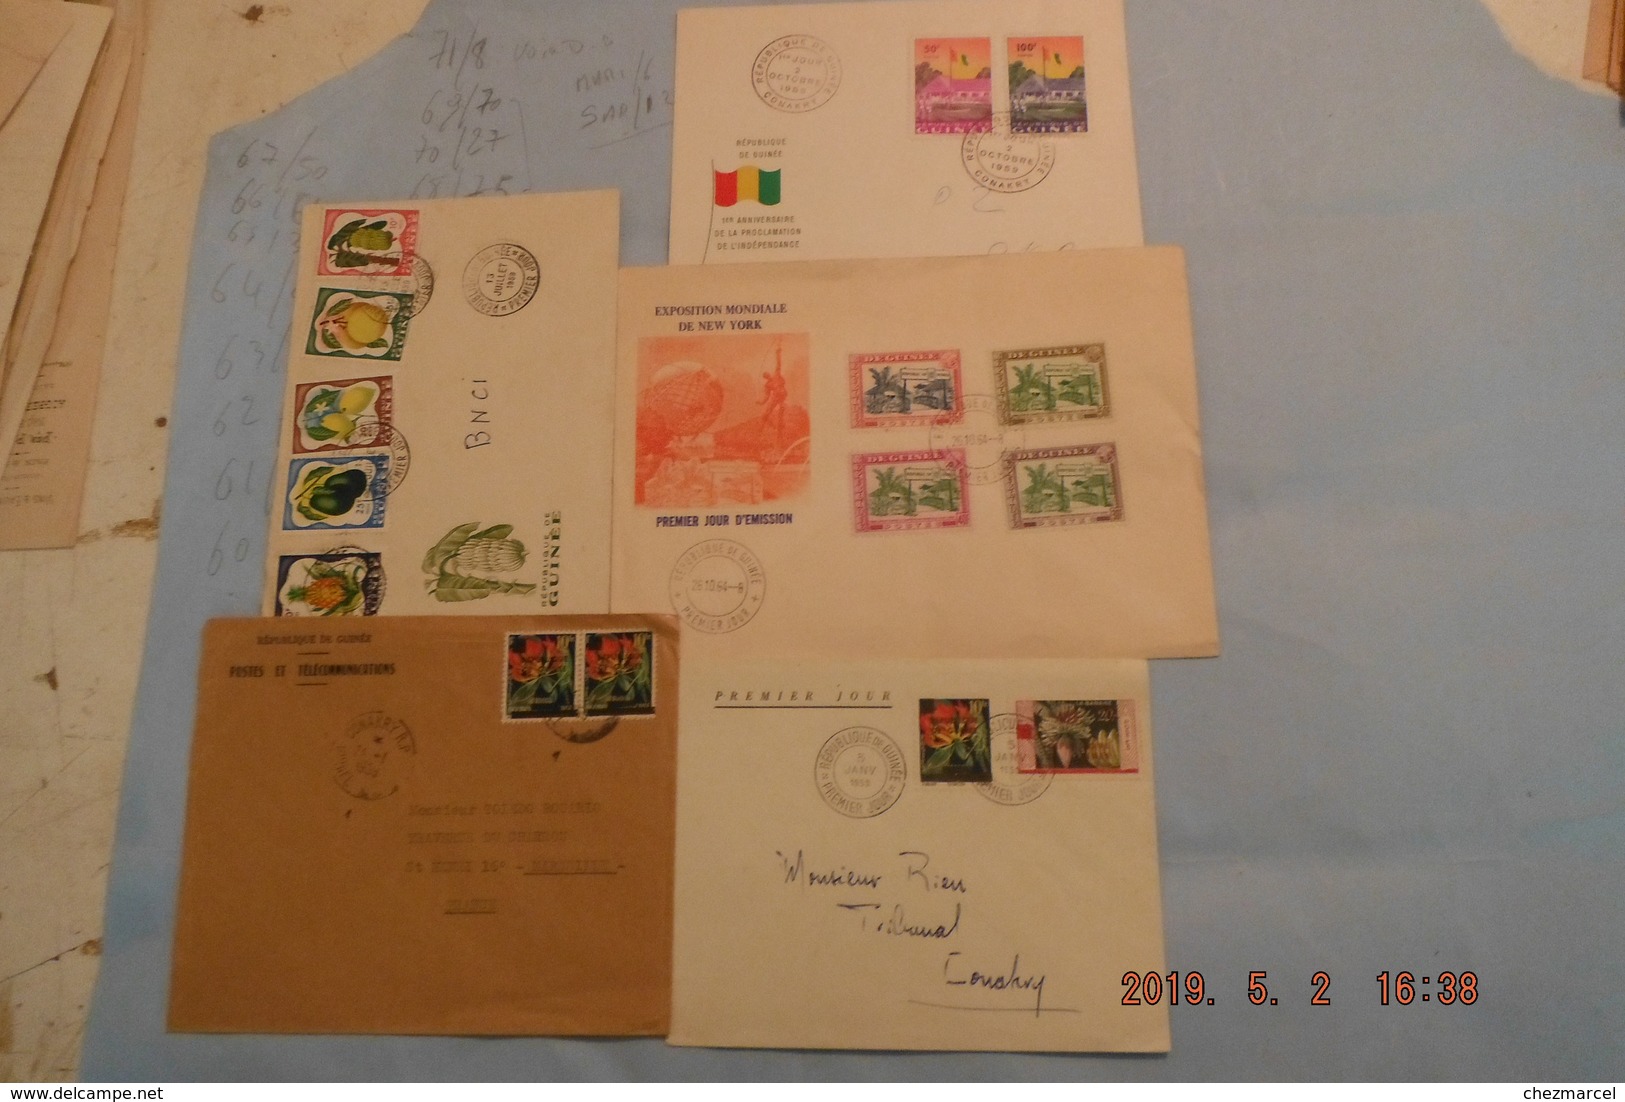 lot +150 fdc afrique +cartes -maximum +lettres ....mali cameroun tchad mauritanie dahomey et autres 36scans